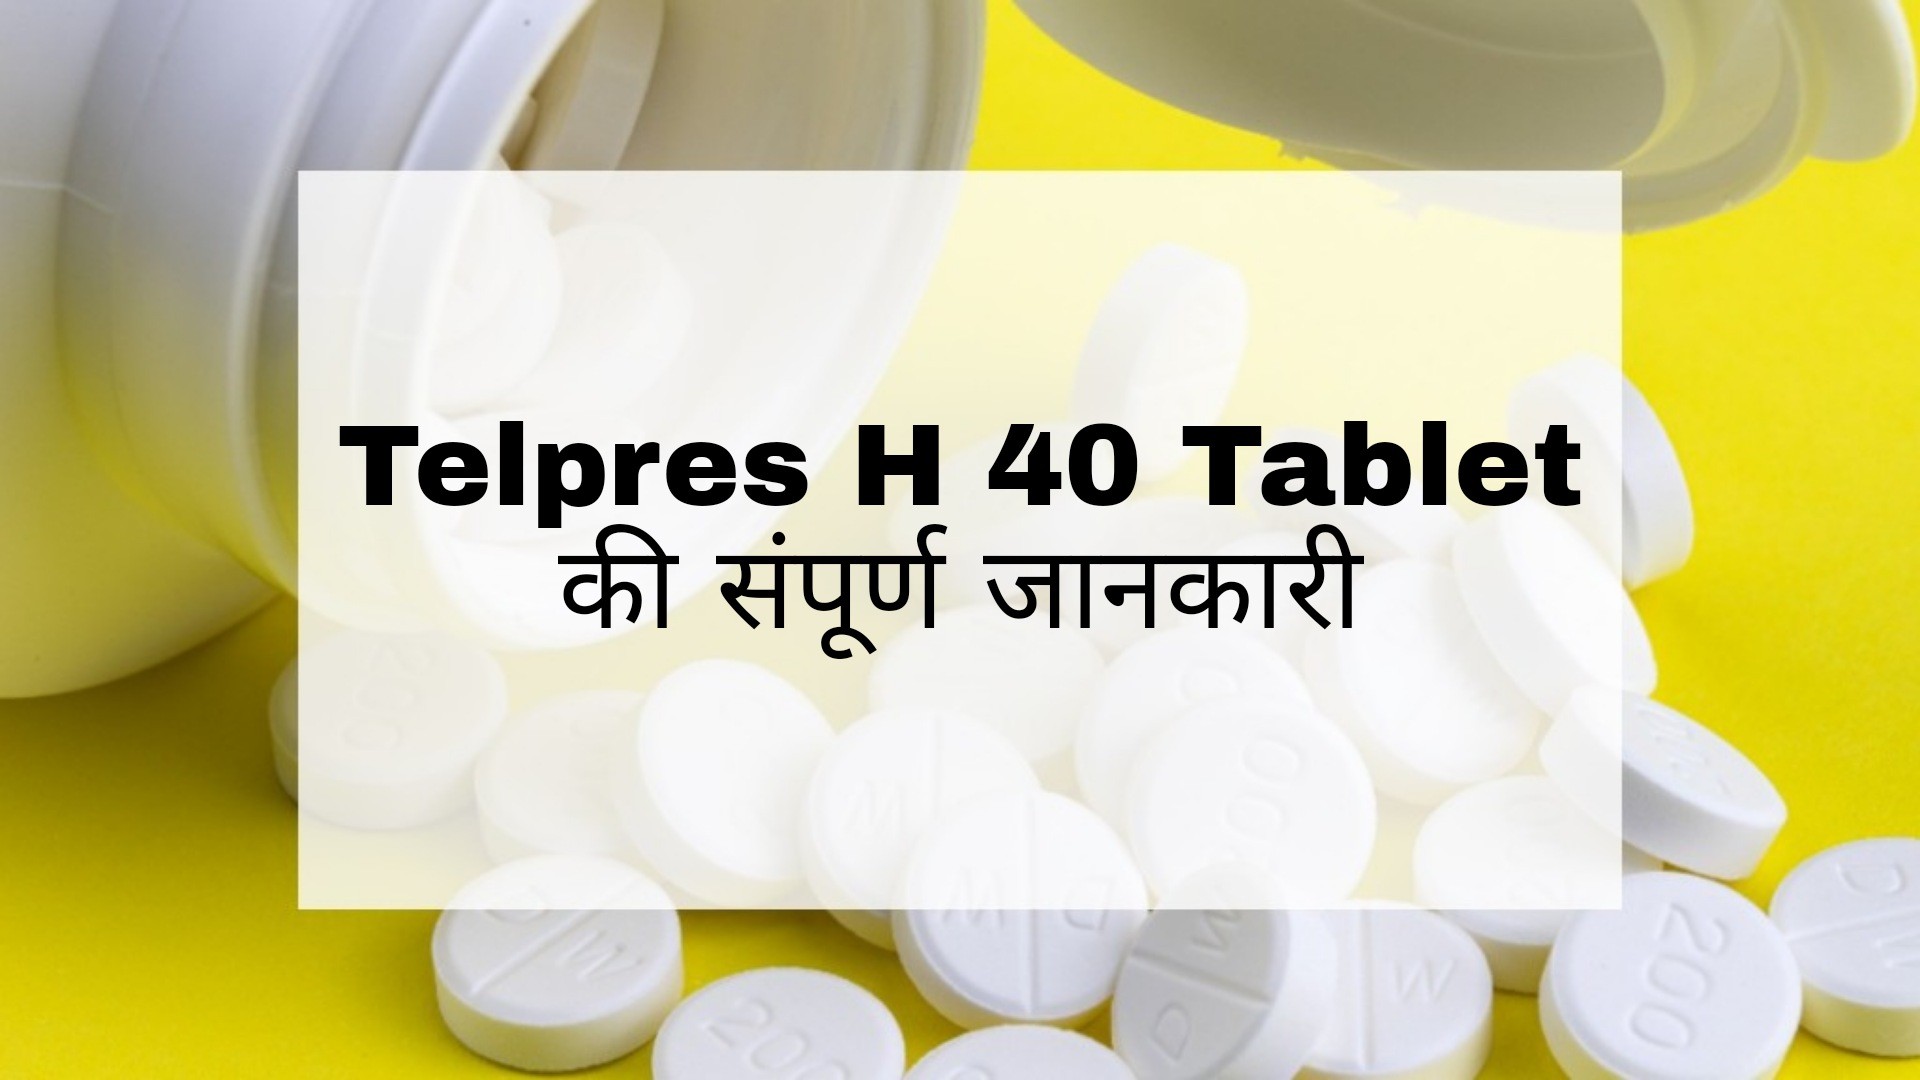 Telpres H 40 Tablet